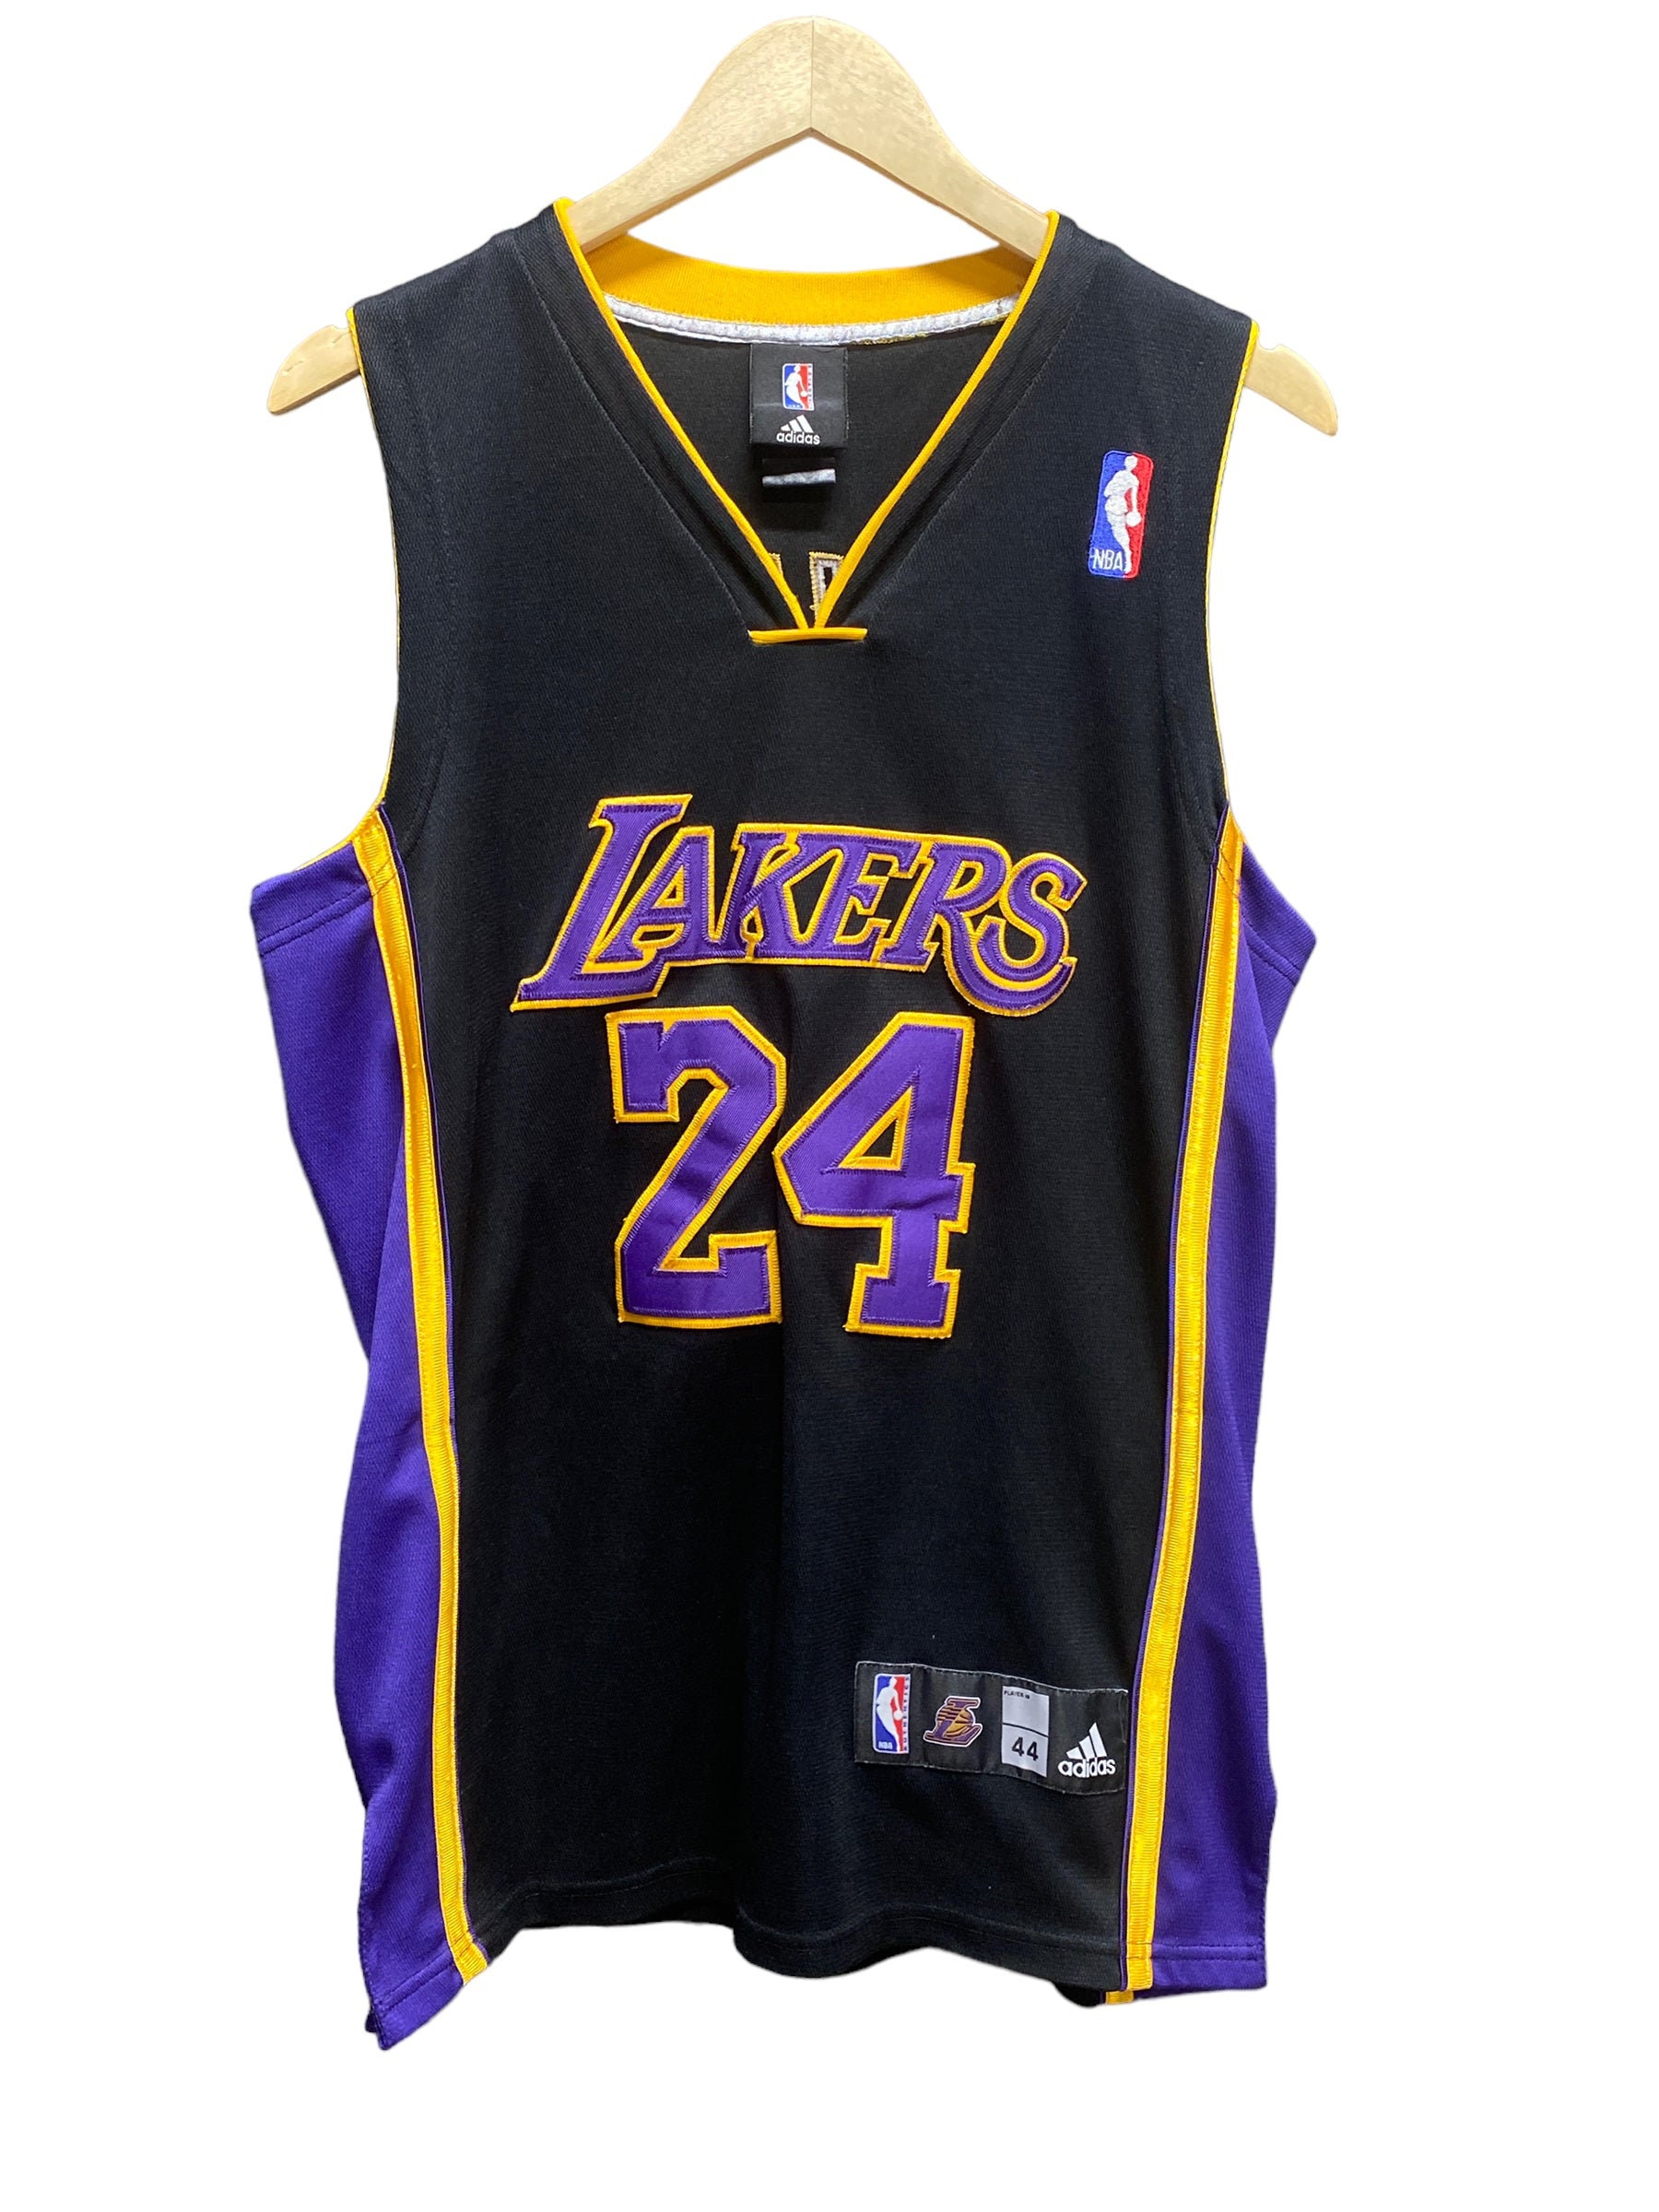 Adidas NBA Los Angeles Lakers Kobe Bryant #24 Black Mamba Jersey Size XXL.